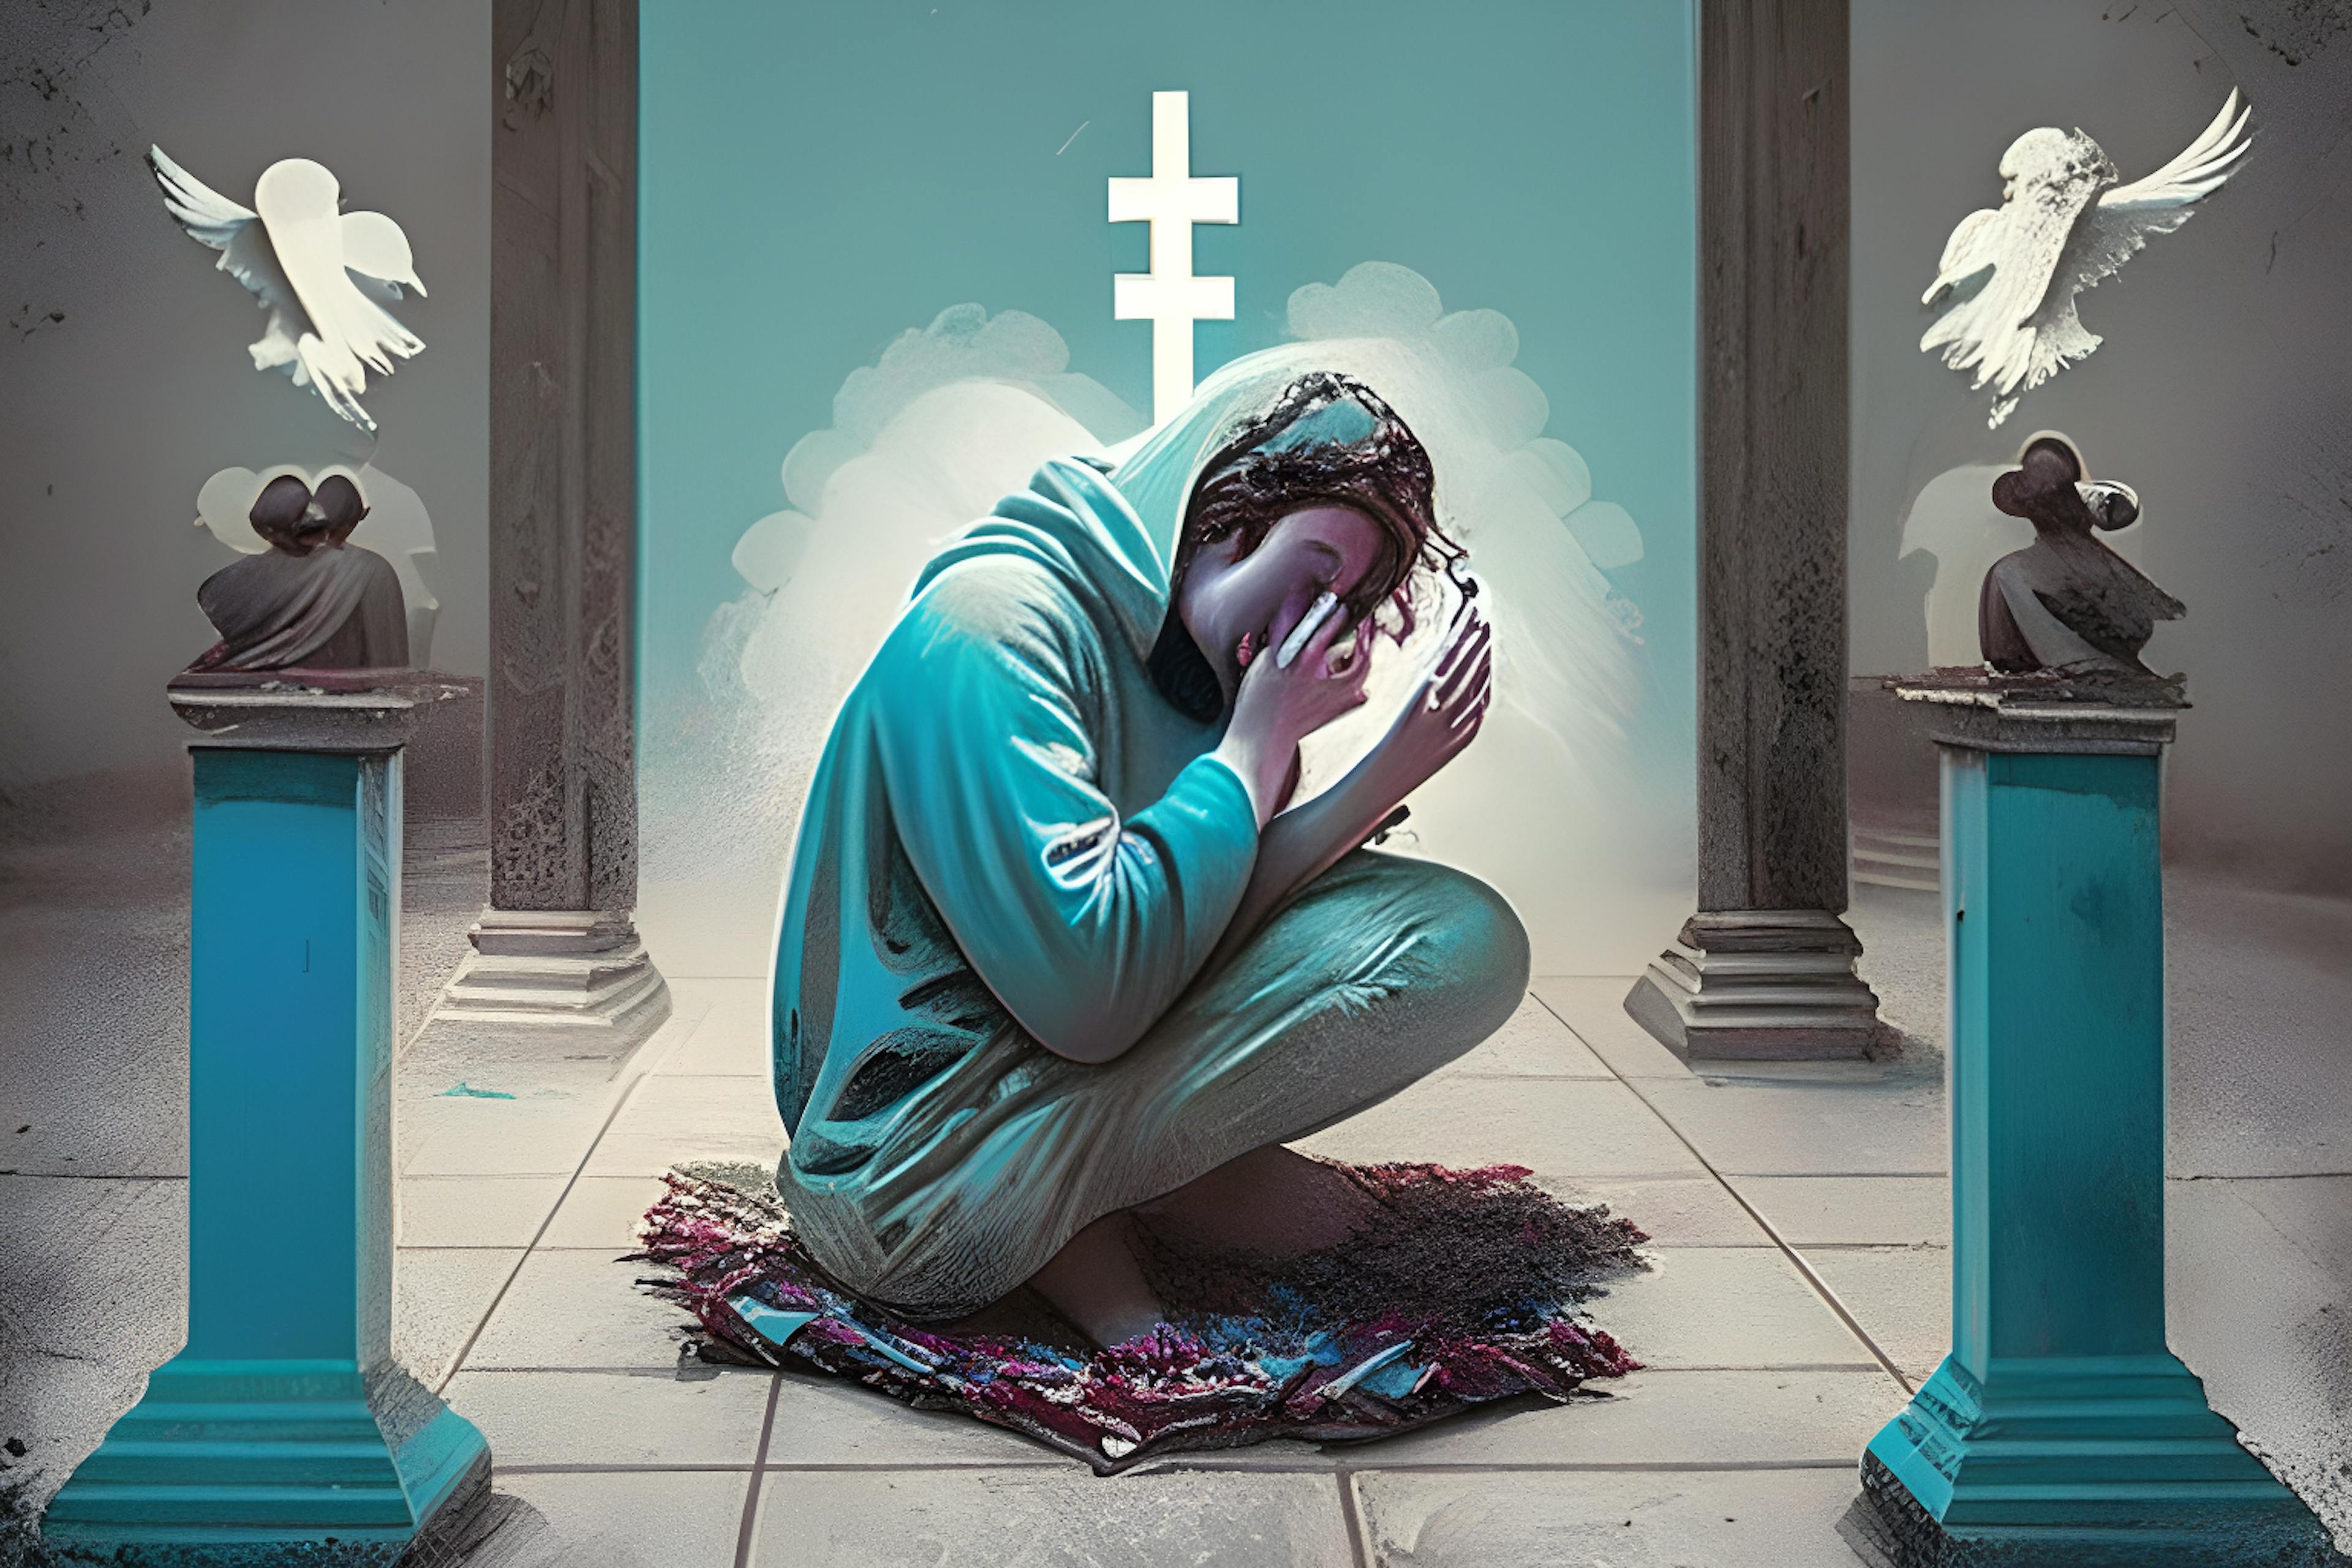 HackerNoon AI Image Generation, Prompt "Uma pessoa viciada em mídia social orando aos deuses"